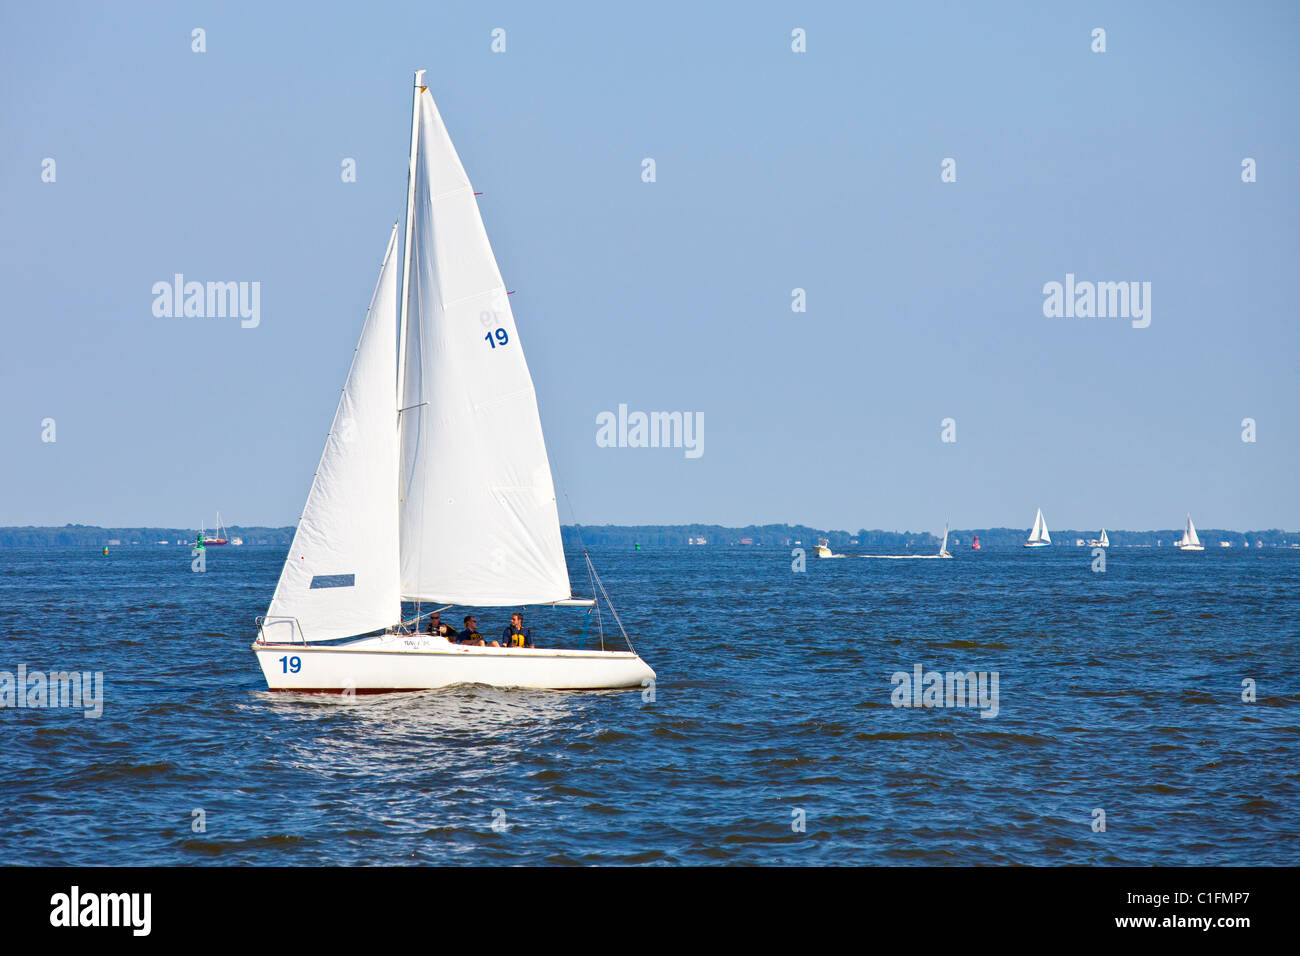 USNA voilier, la baie de Chesapeake, US Naval Academy, Annapolis, Maryland Banque D'Images